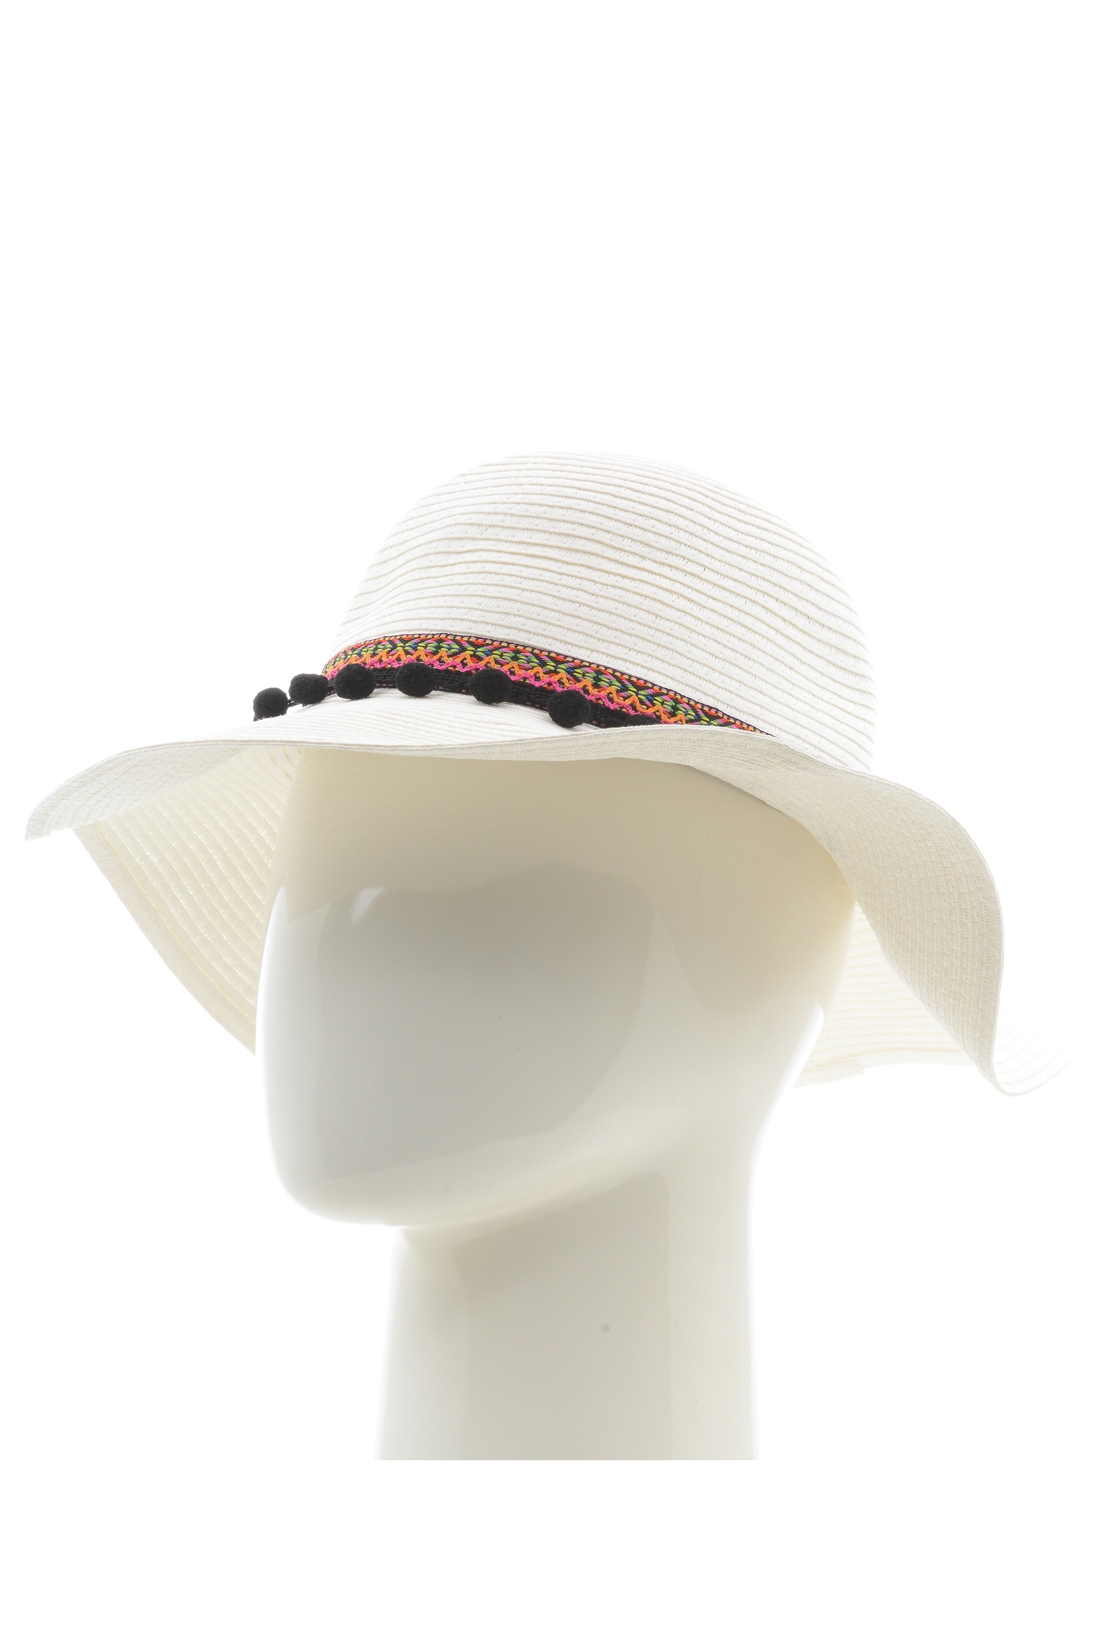 Шляпа с каймой (арт. baon B348001), размер Б/р 56, цвет белый